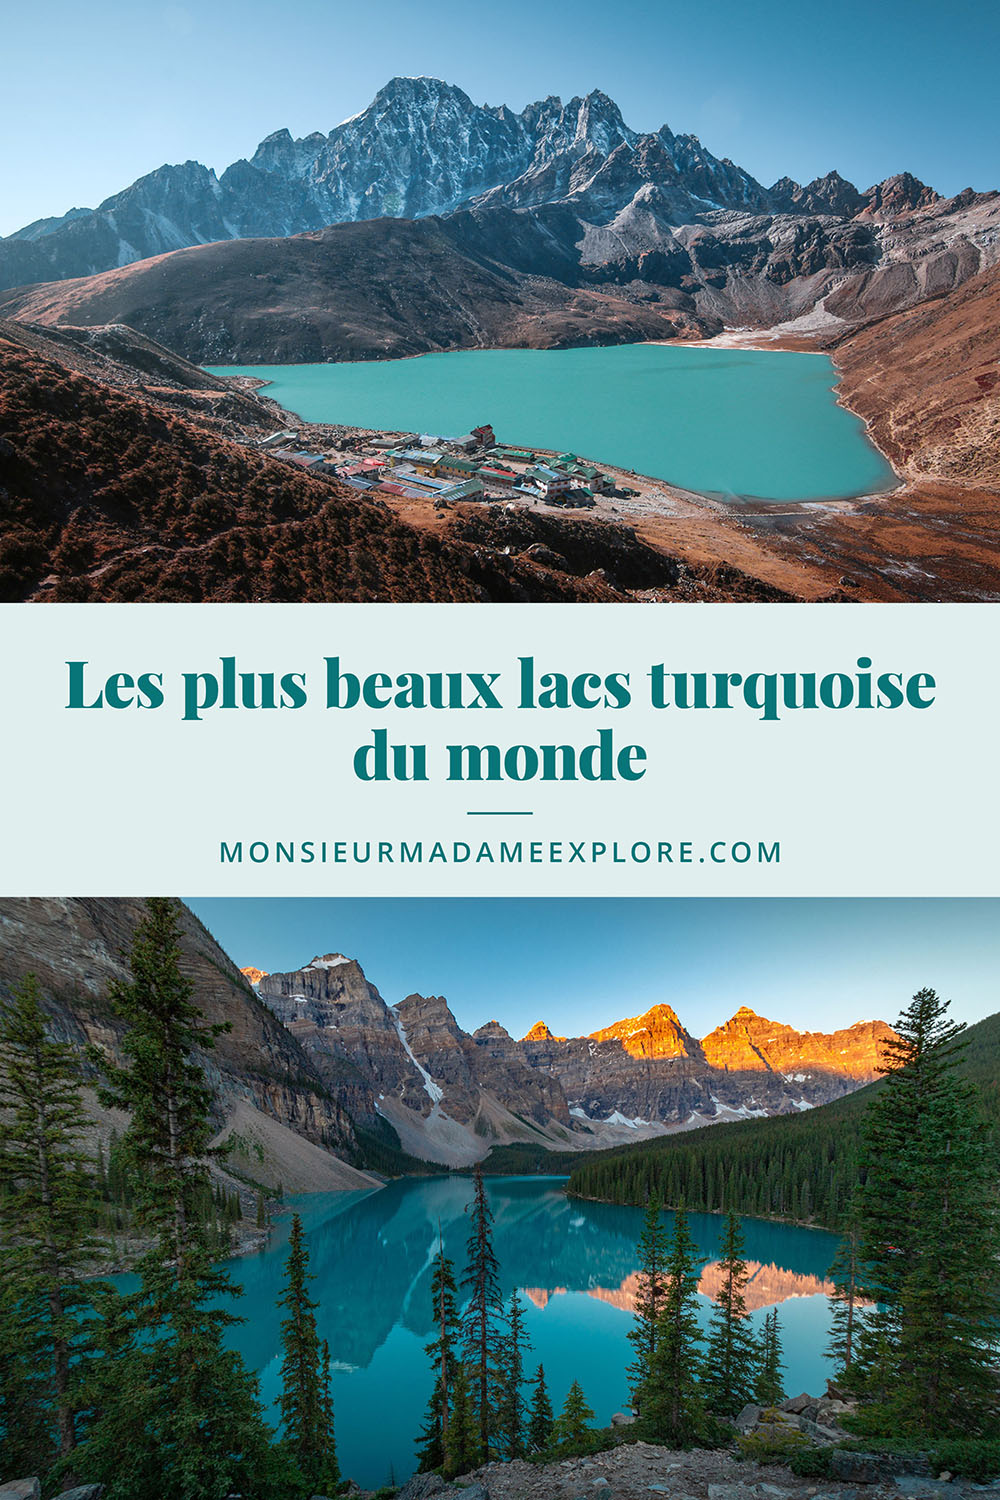 Les plus beaux lacs turquoise du monde, Monsieur+Madame Explore, Blogue de voyage / The most beautiful turquoise lakes in the world